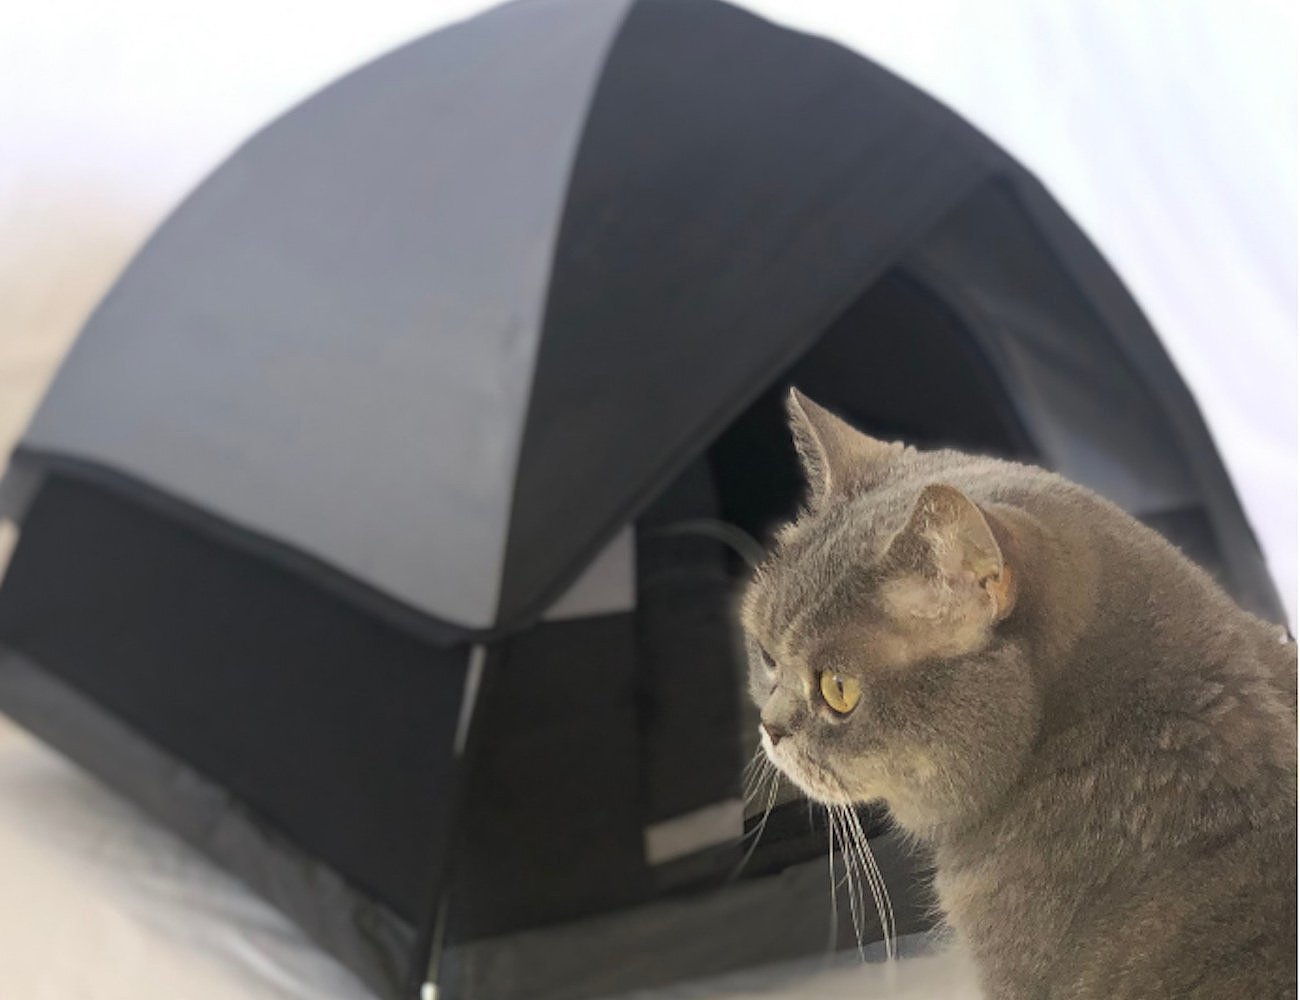 Cat Camp，宠物，帐篷，猫咪，